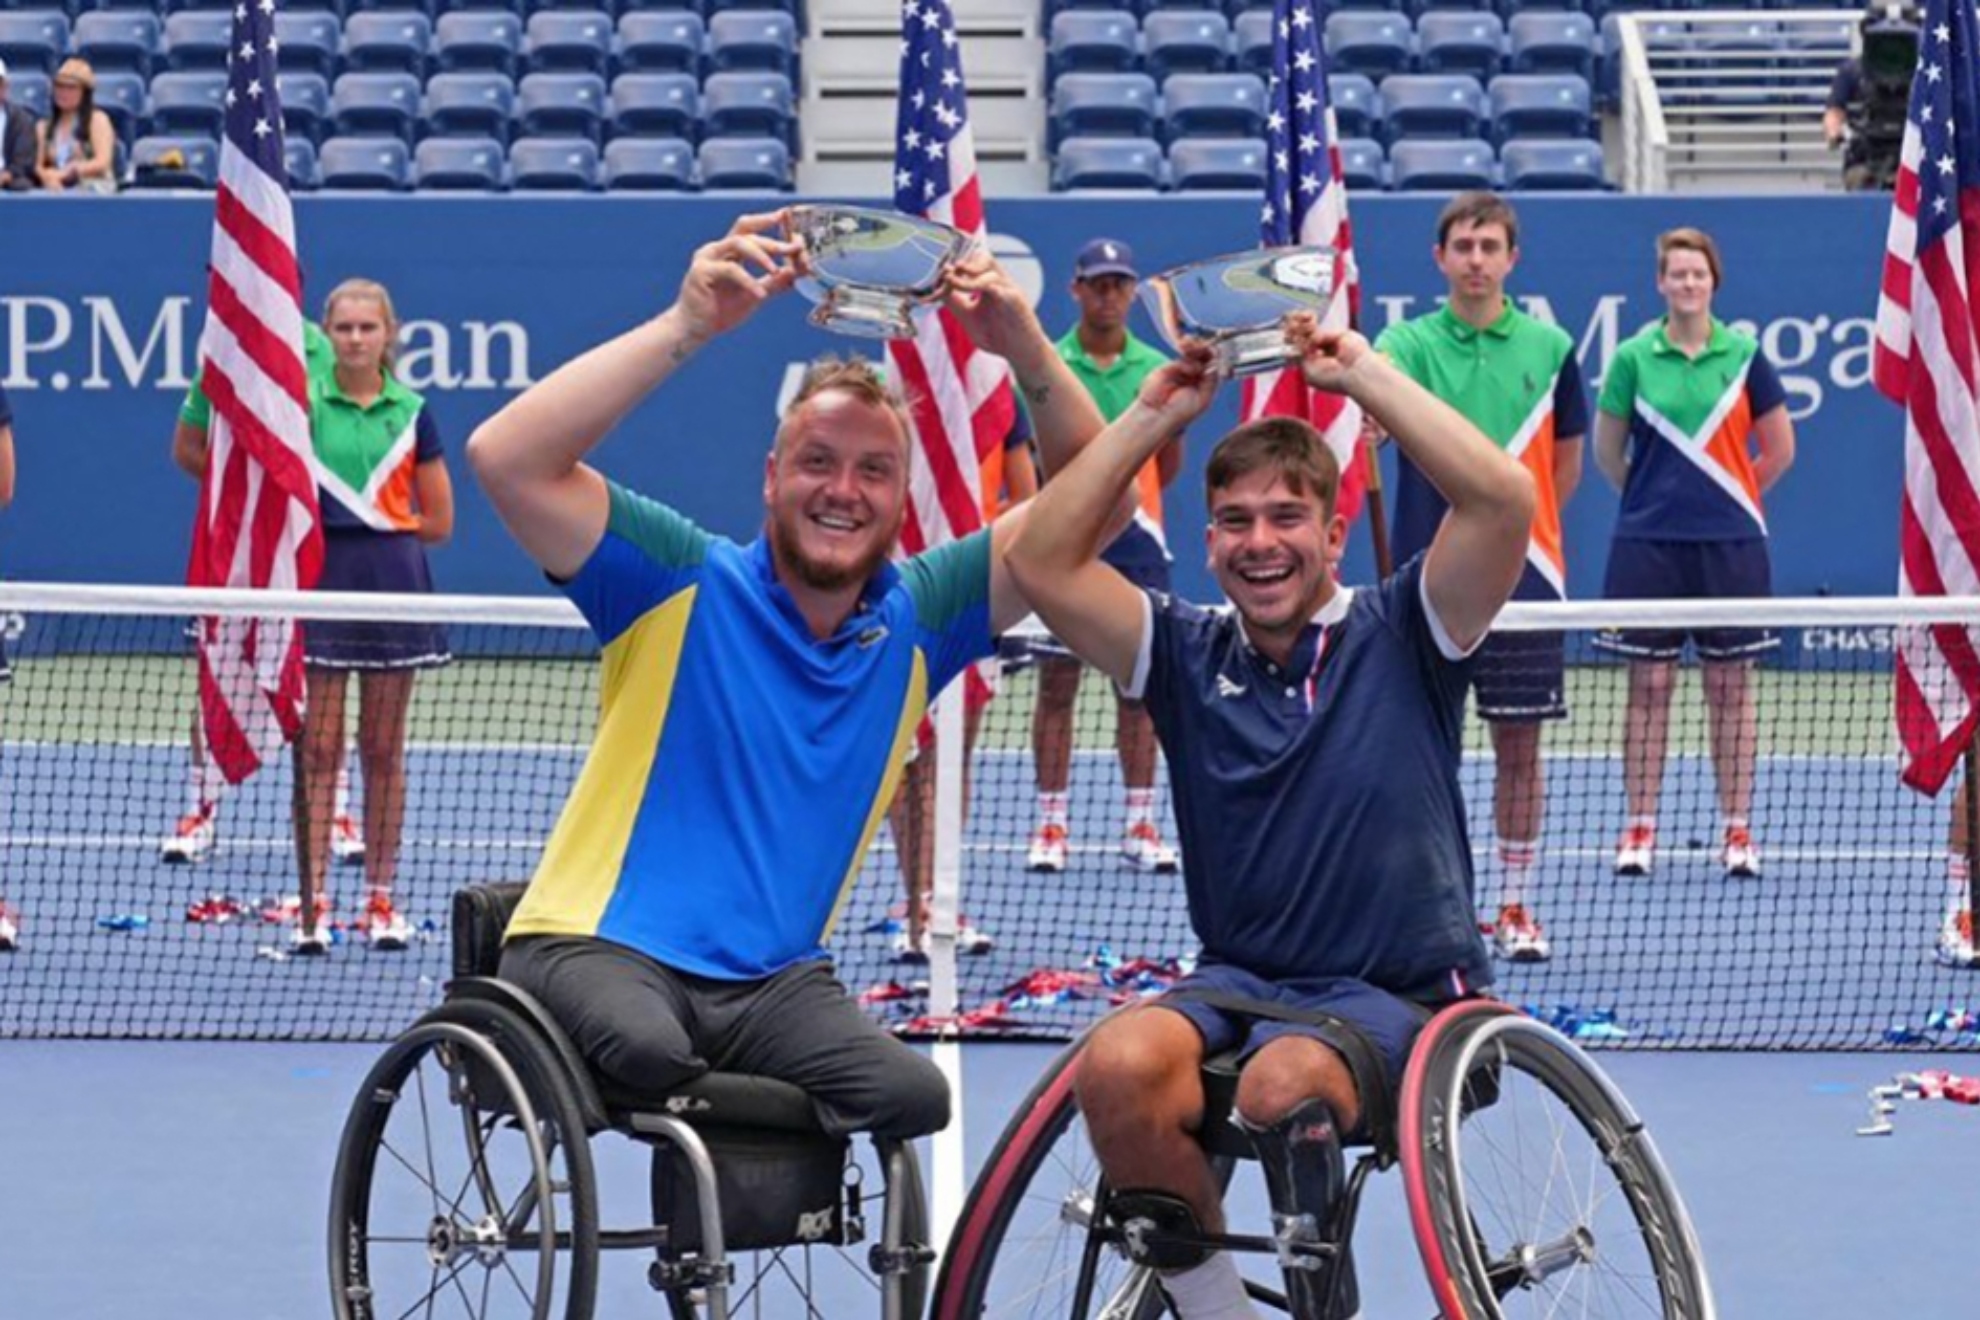 Martín de la Puente, a la derecha, junto al francés Nicolas Peifer, con sus trofeos como ganadores del US Open.